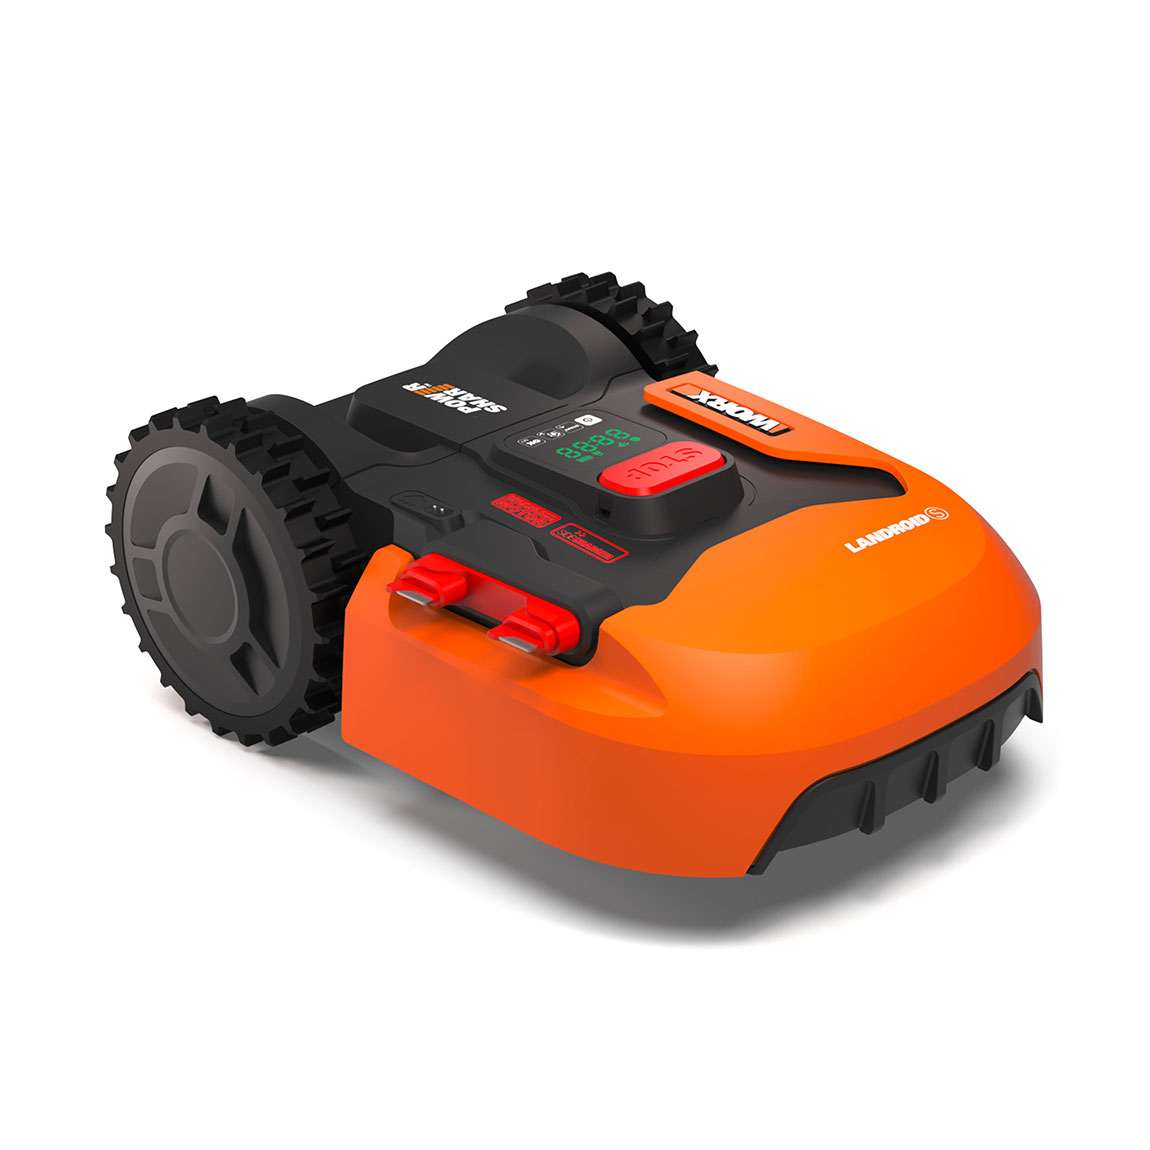 WORX Landroid S400 - Mähroboter für Rasenflächen bis zu 400m² - Orange